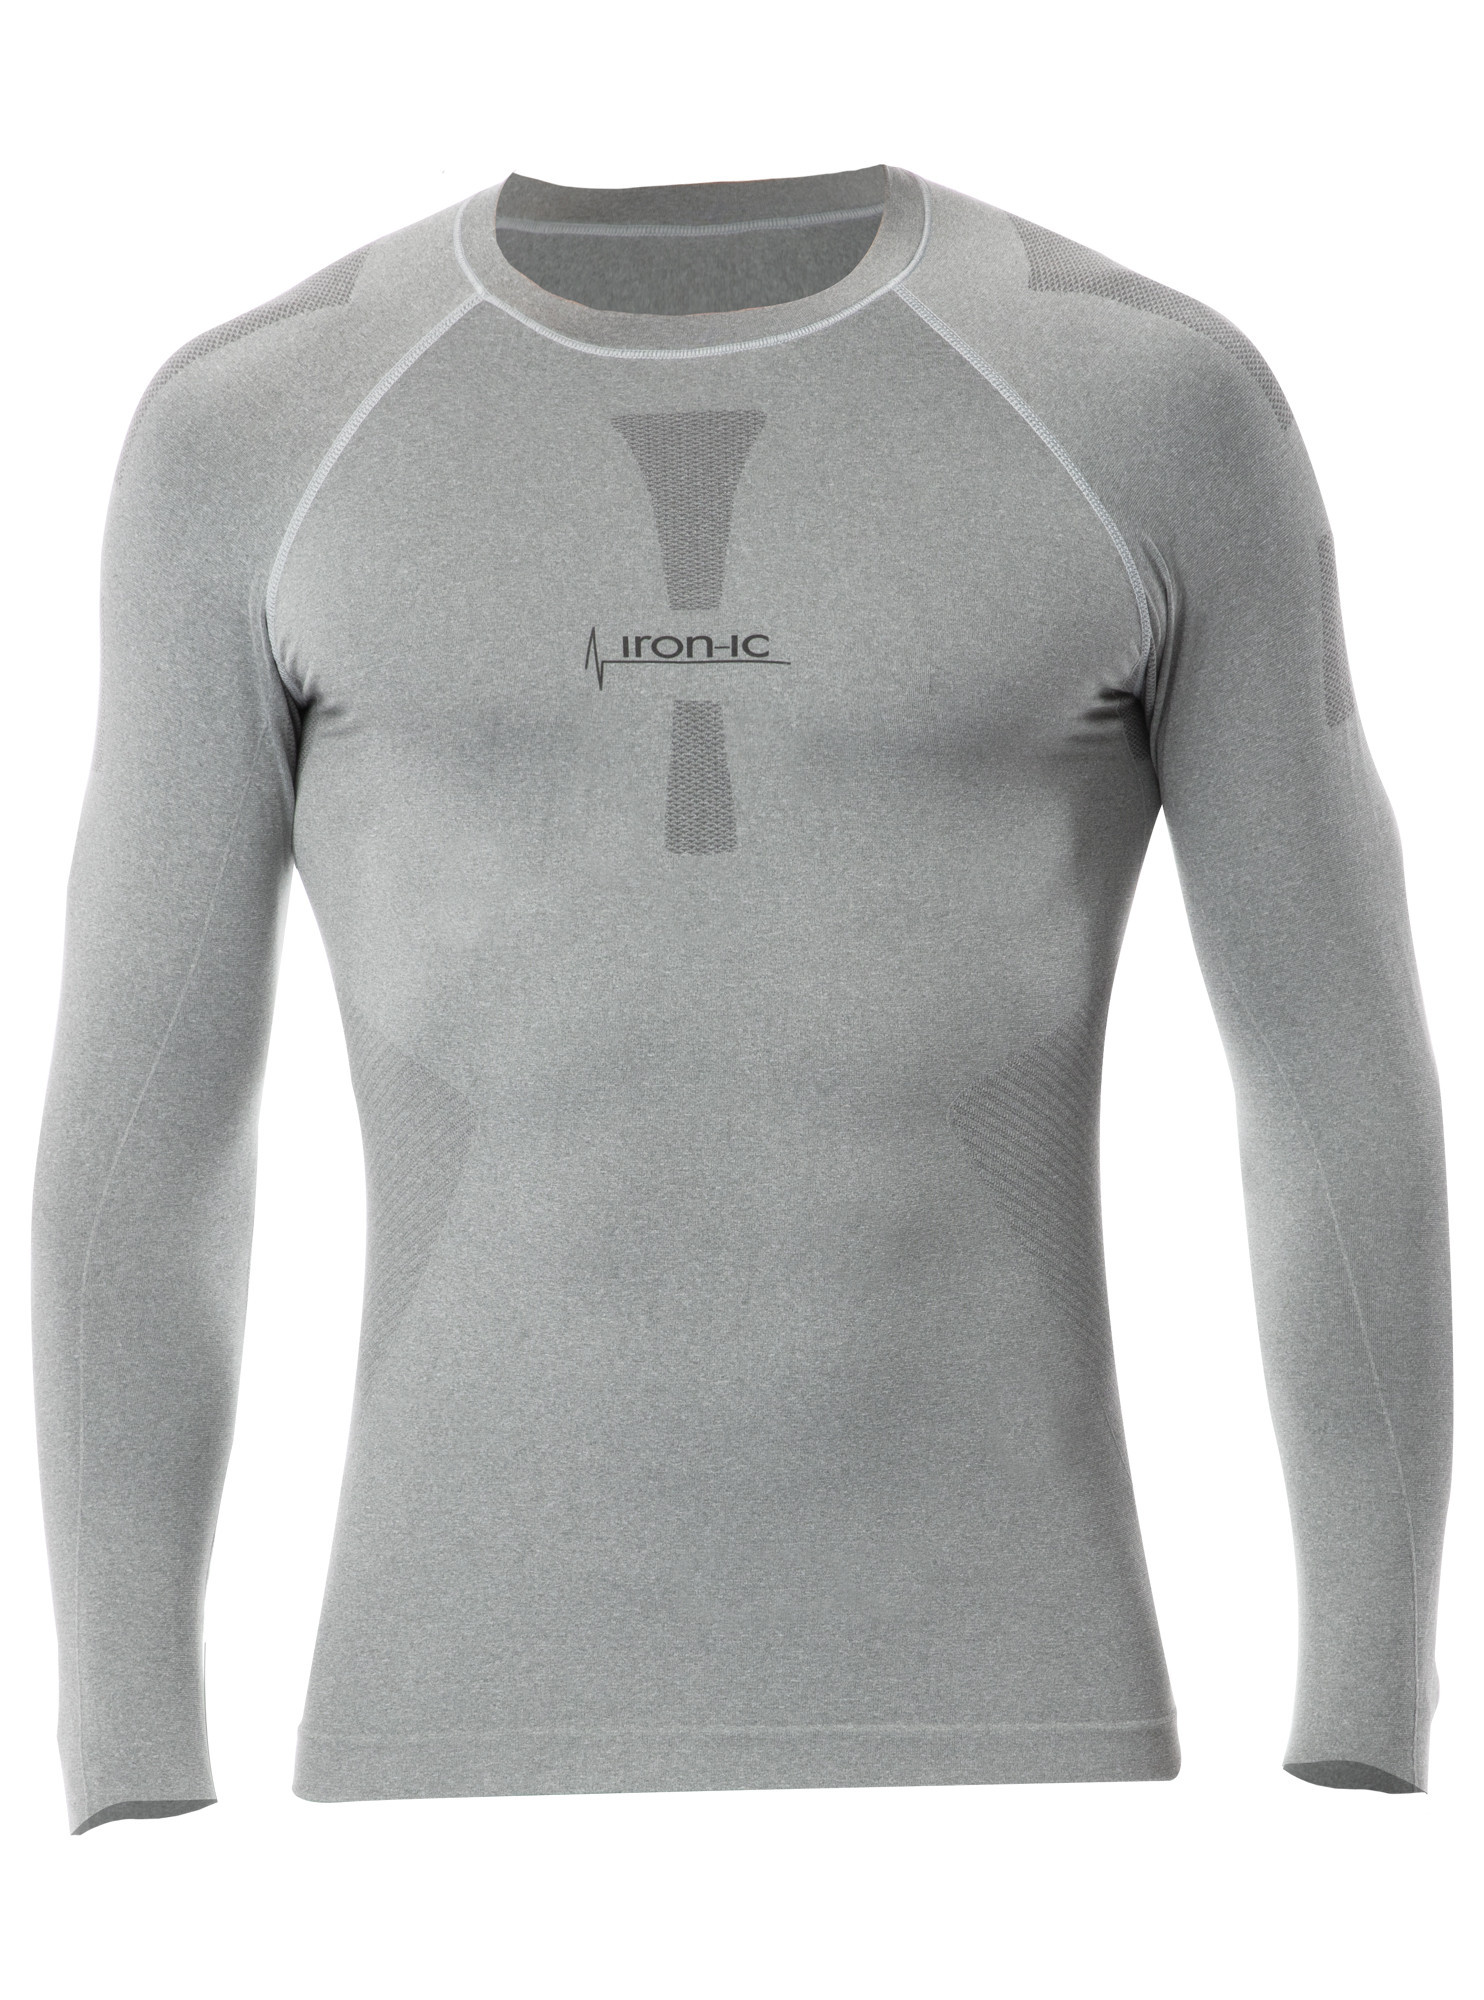 Pánské funkční tričko s dlouhým rukávem šedá Barva: model 15070697 Velikost: S/M - IRON-IC